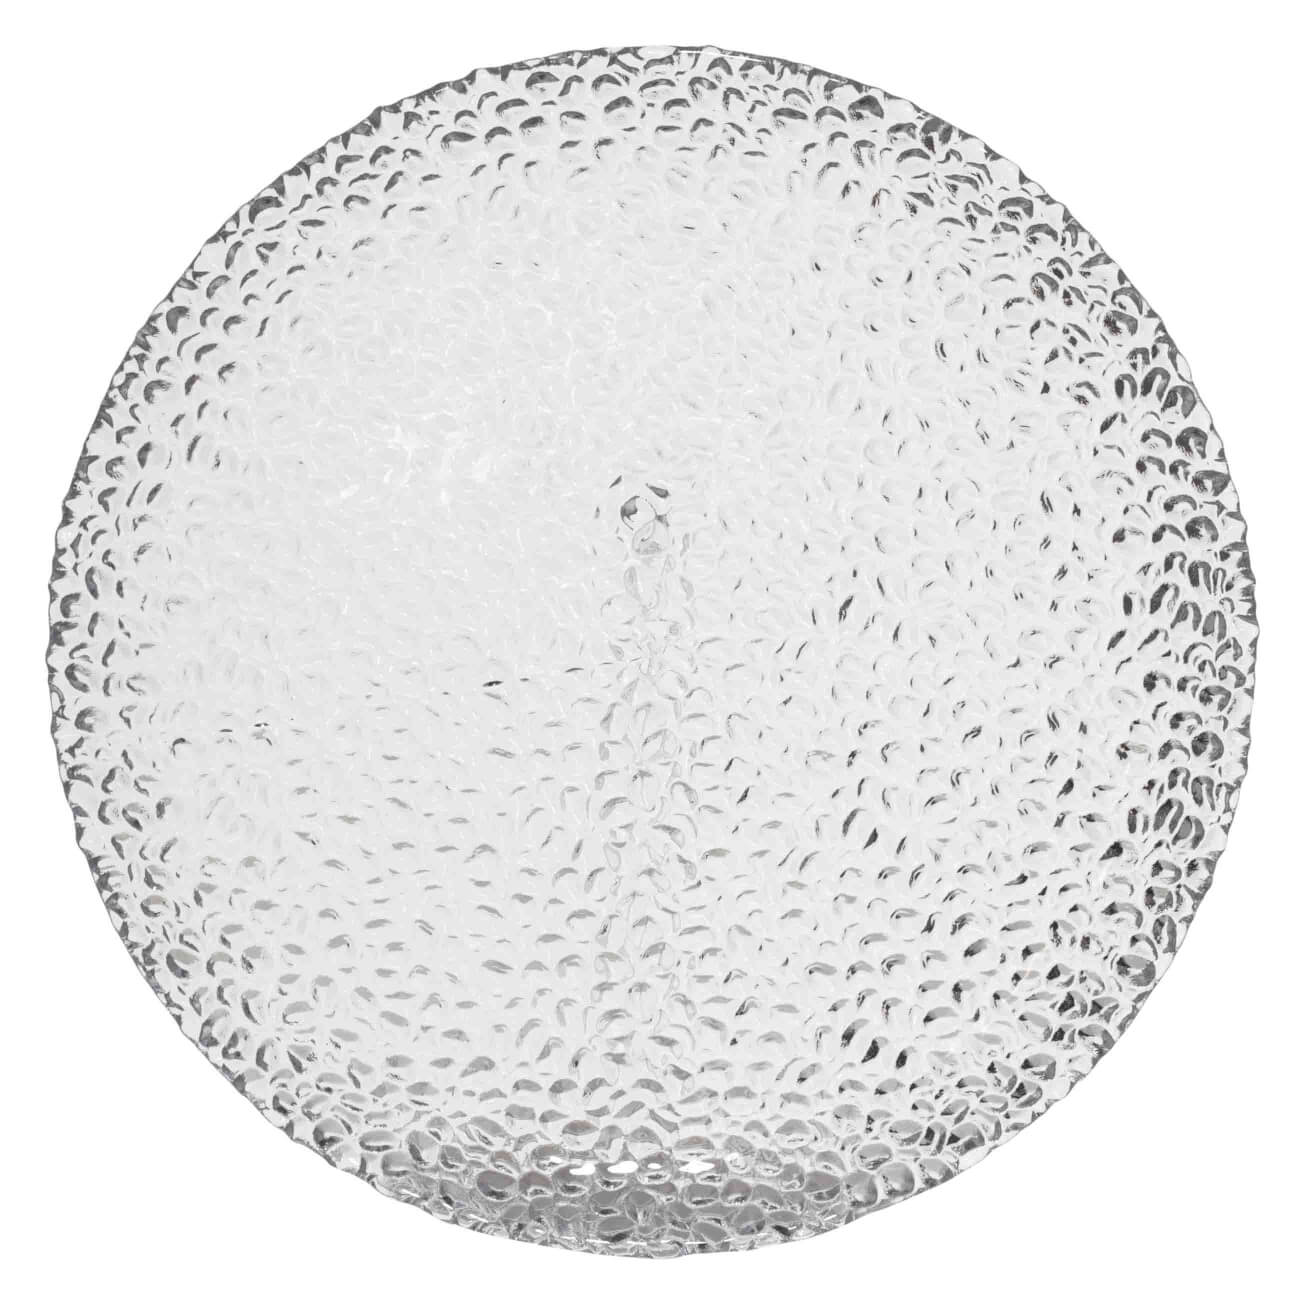 Тарелка обеденная, 27 см, стекло, Капли, Grain тарелка обеденная стекло 25 см круглая lillie luminarc q8714 белая